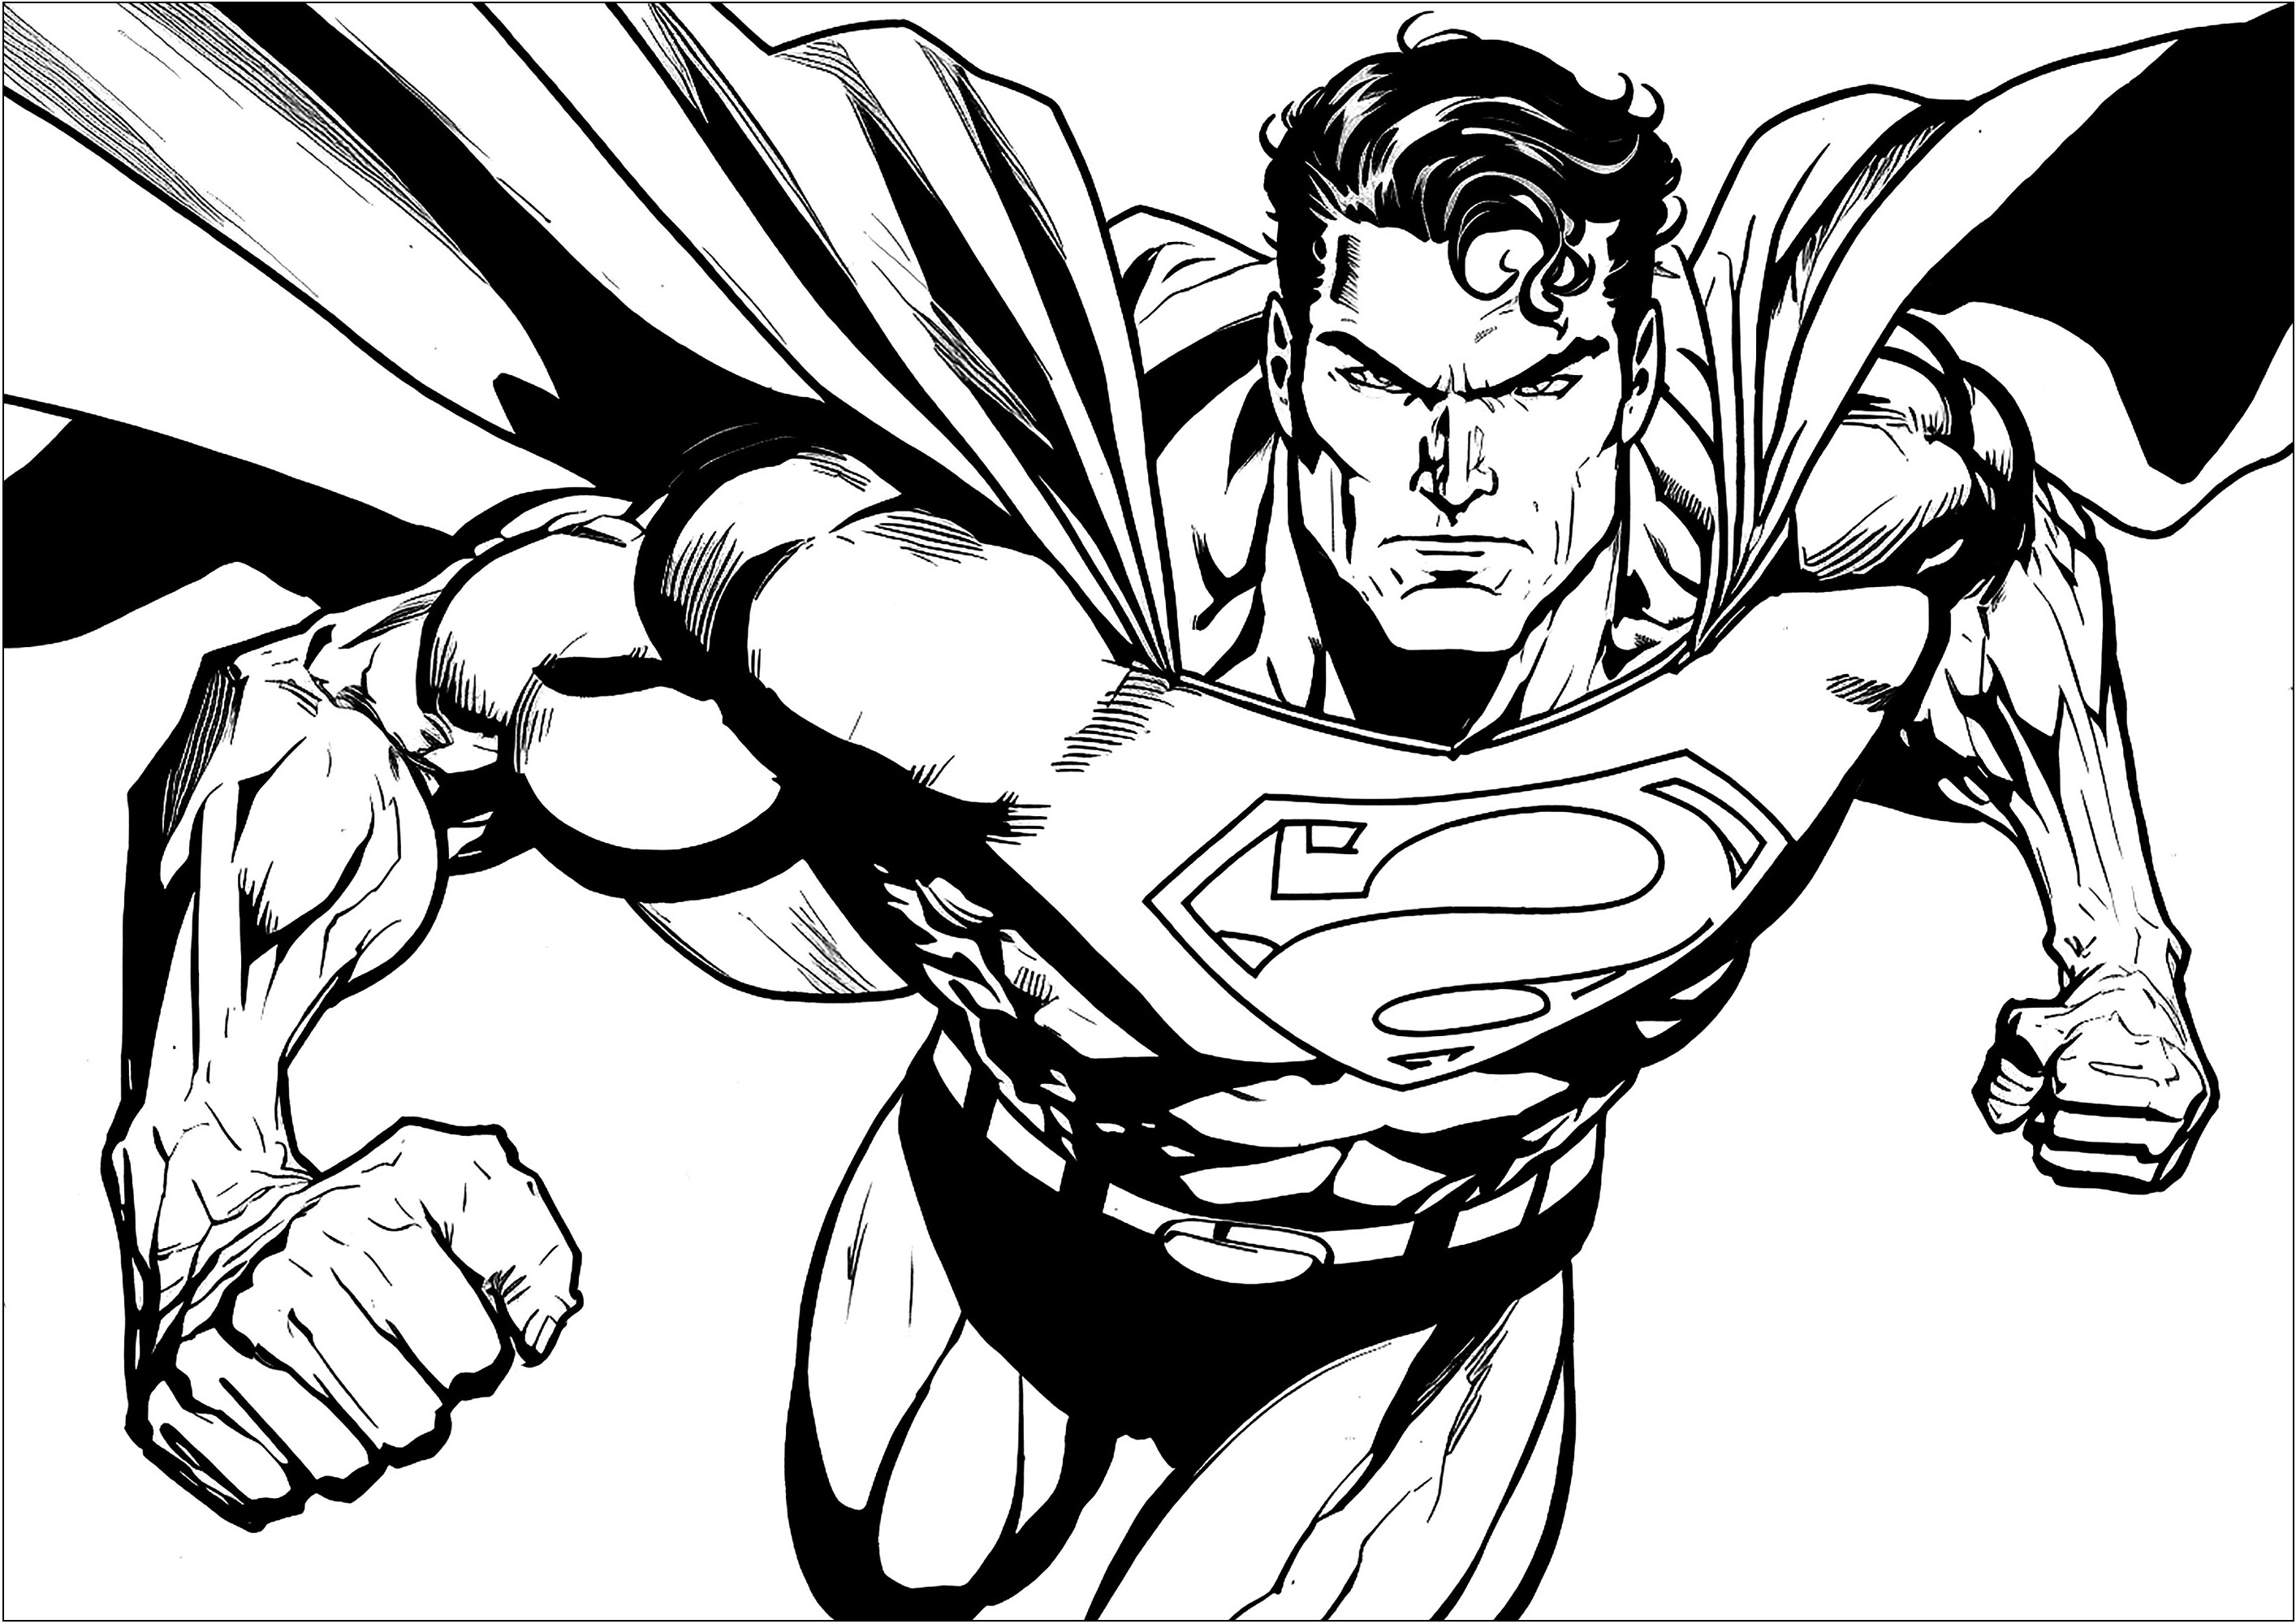 Superman volant dans le ciel, avec sa cape qui flotte derrière lui. Les enfants vont adorer colorier ce super héros et leurs crayons et feutres leur permettront de donner vie à ce dessin.